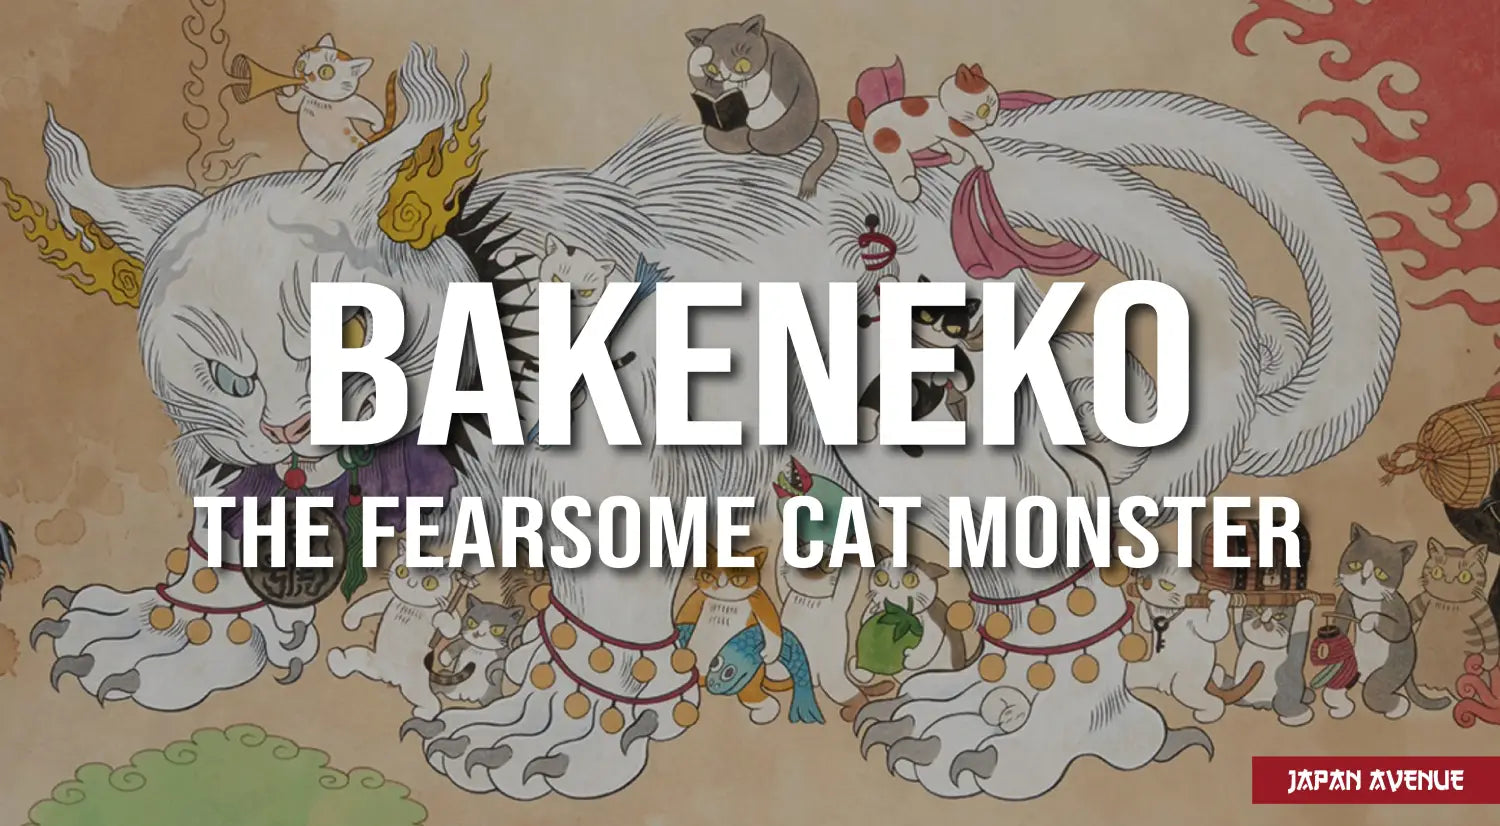 Bakeneko, the fearsome cat demon from Japanese mythology!